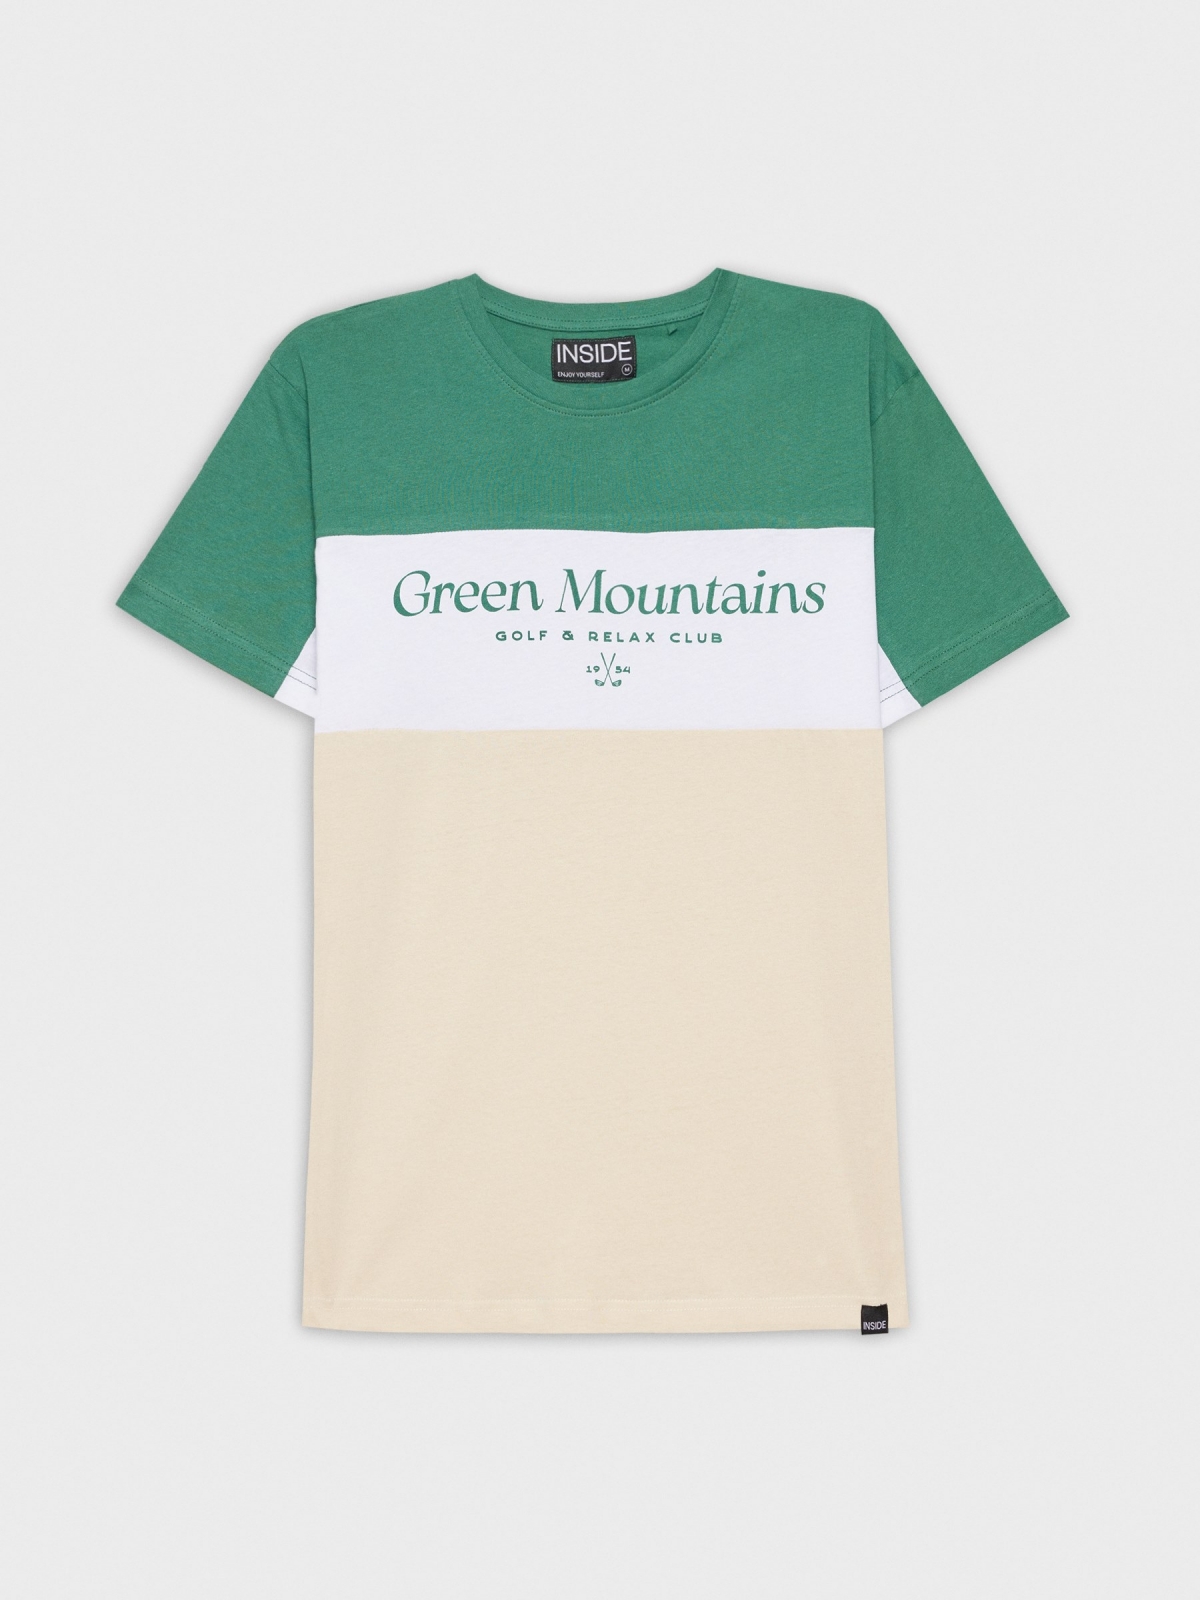  Camiseta Green Mountains areia